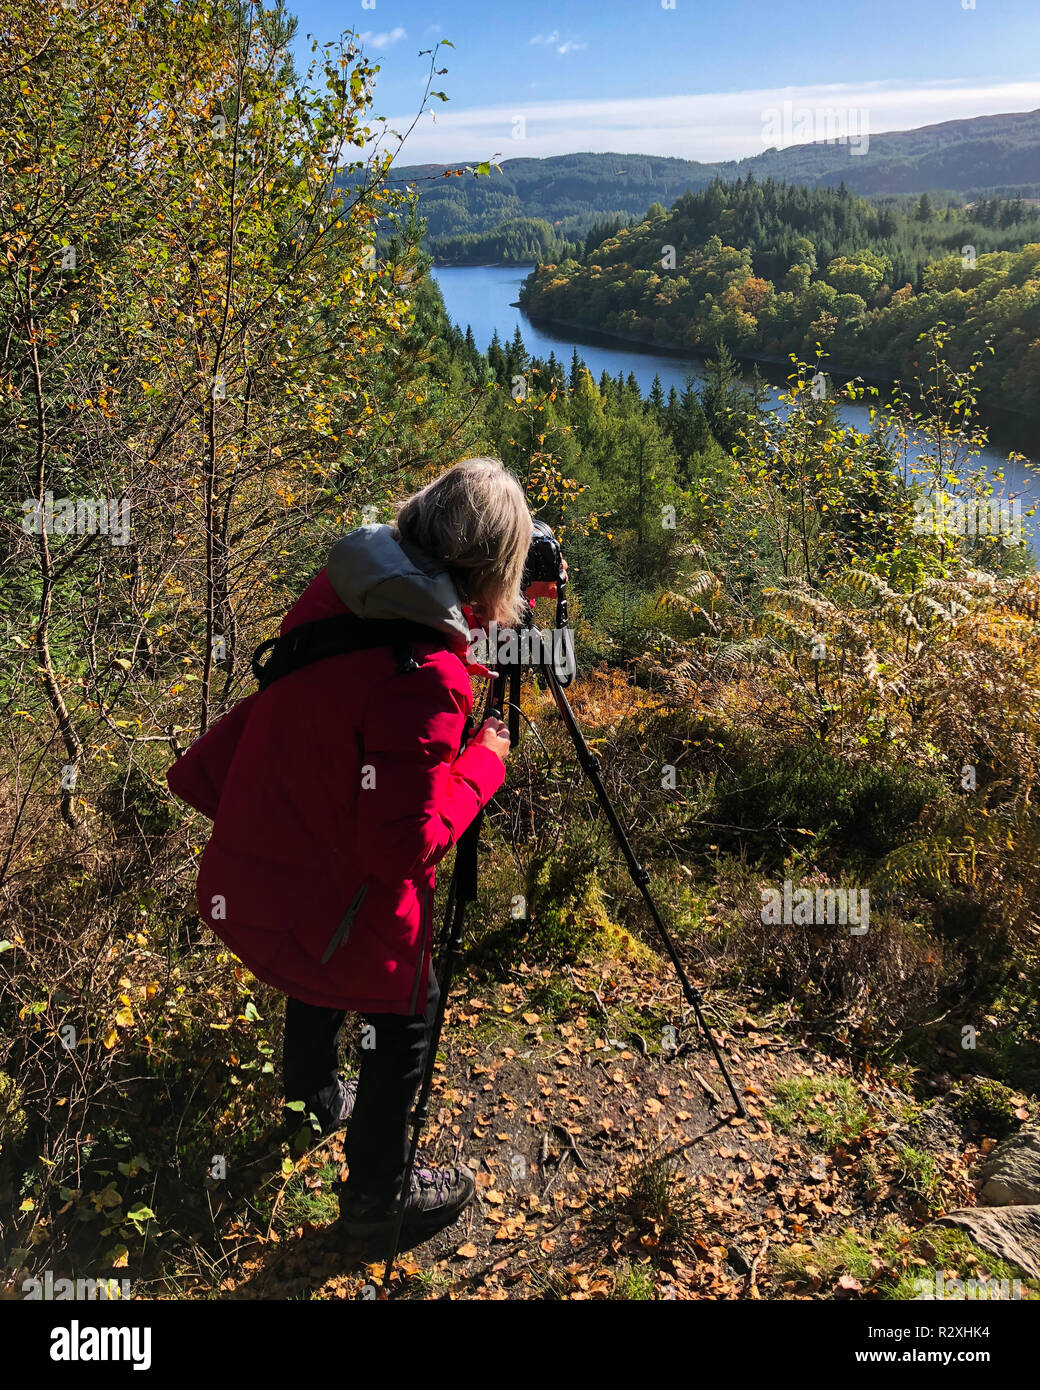 Femme photographe mise en place sur le trépied de l'appareil photo pour prendre une photo de paysage écossais, Trossachs, Scotland UK Banque D'Images